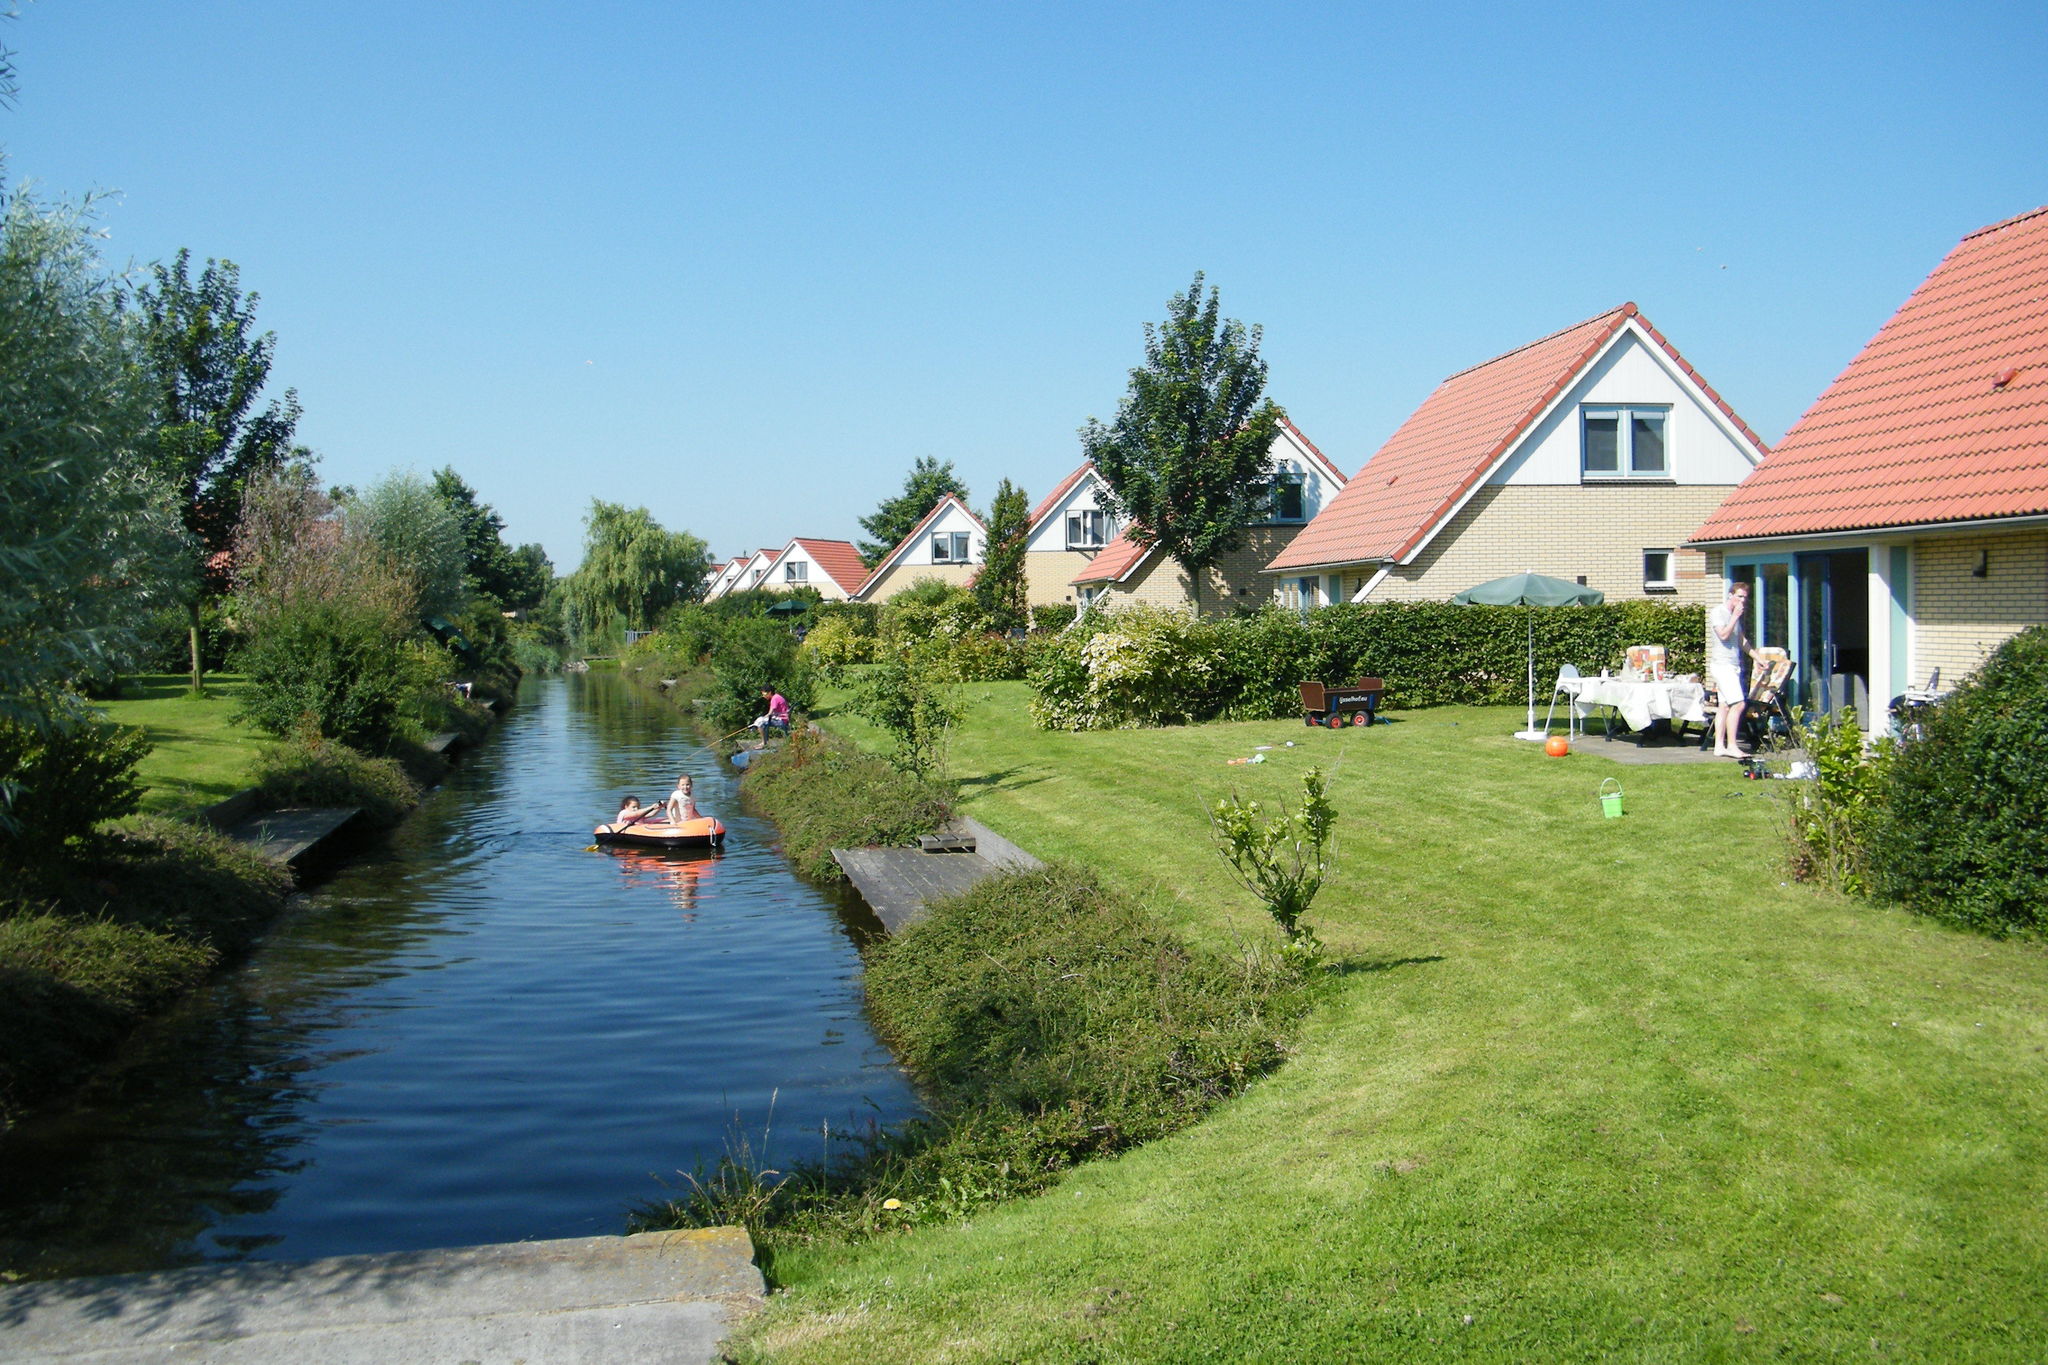 Haus mit Geschirrspüler, 19 km. Van Hoorn